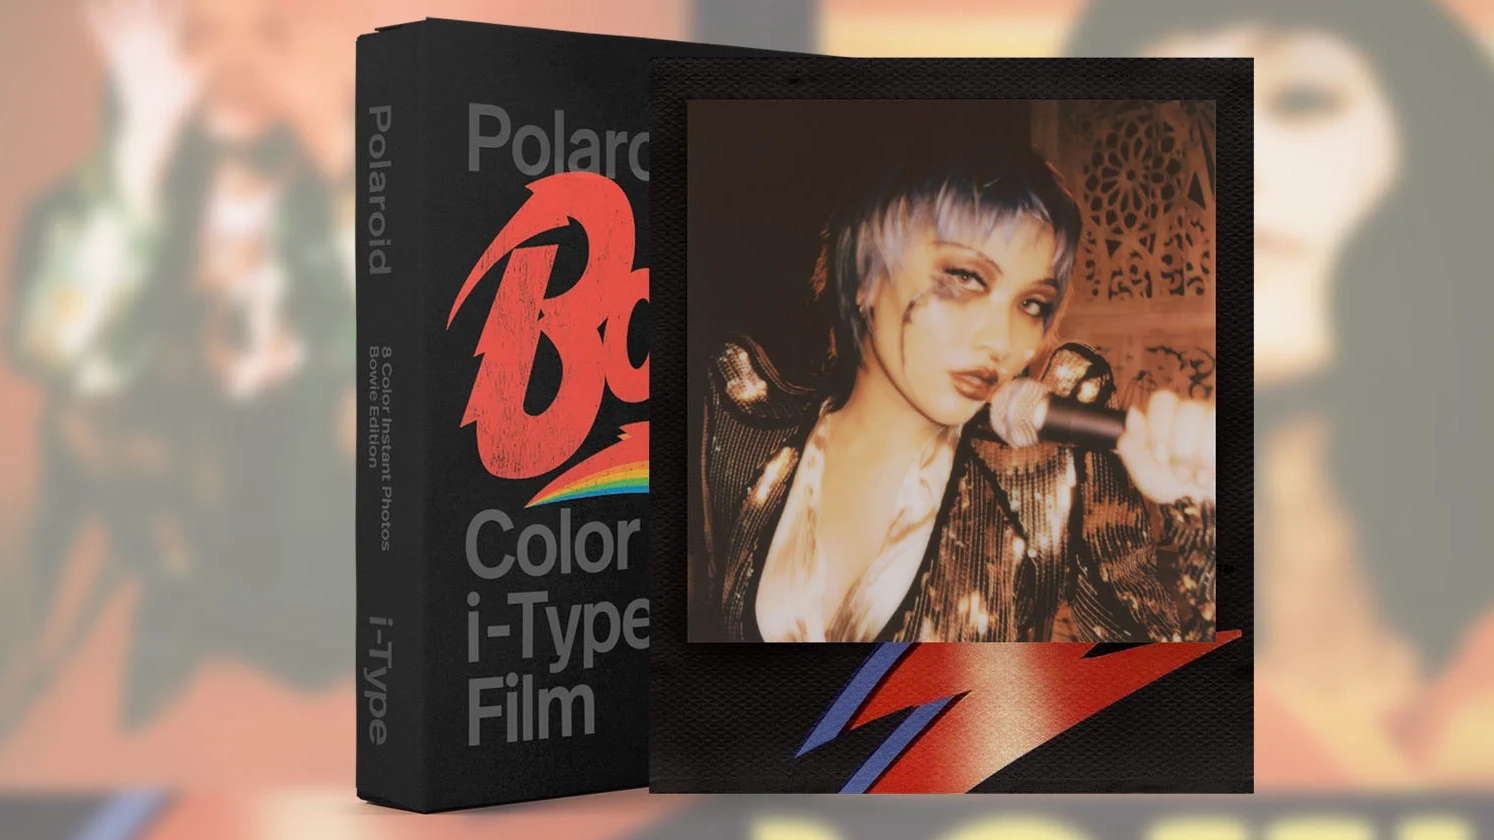 Polaroid Sinirli Uretim David Bowie Temali Filmi Piyasaya Suruyor